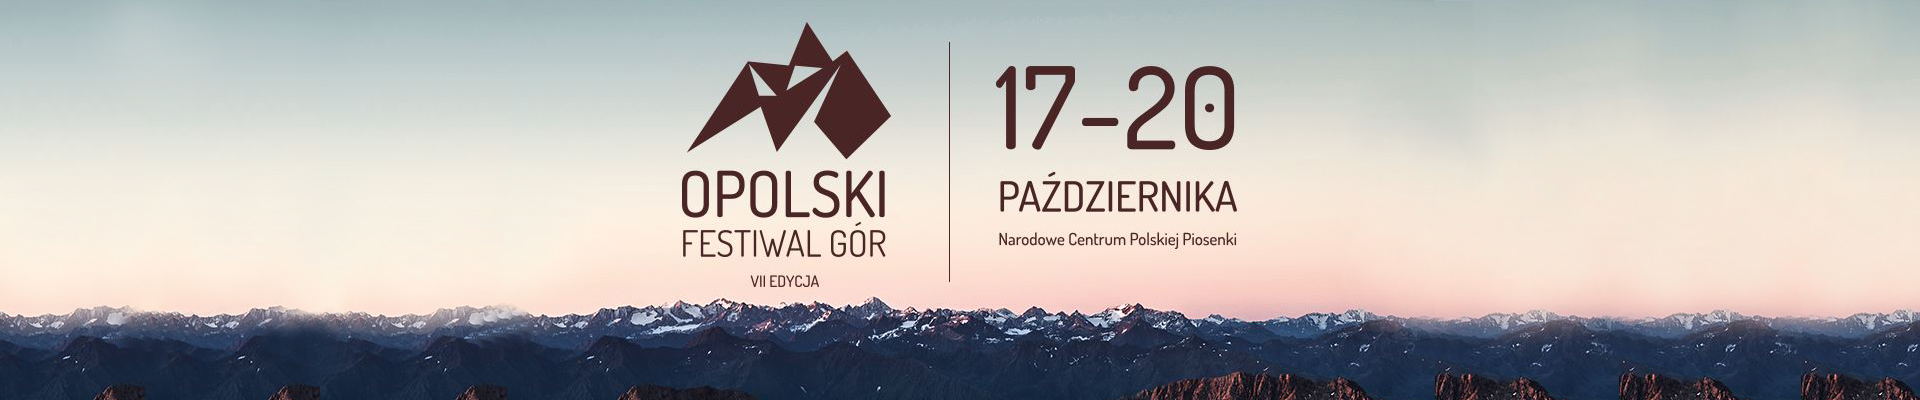 17 – 20.10.2018 Zapraszamy na VII Opolski Festiwal Gór!